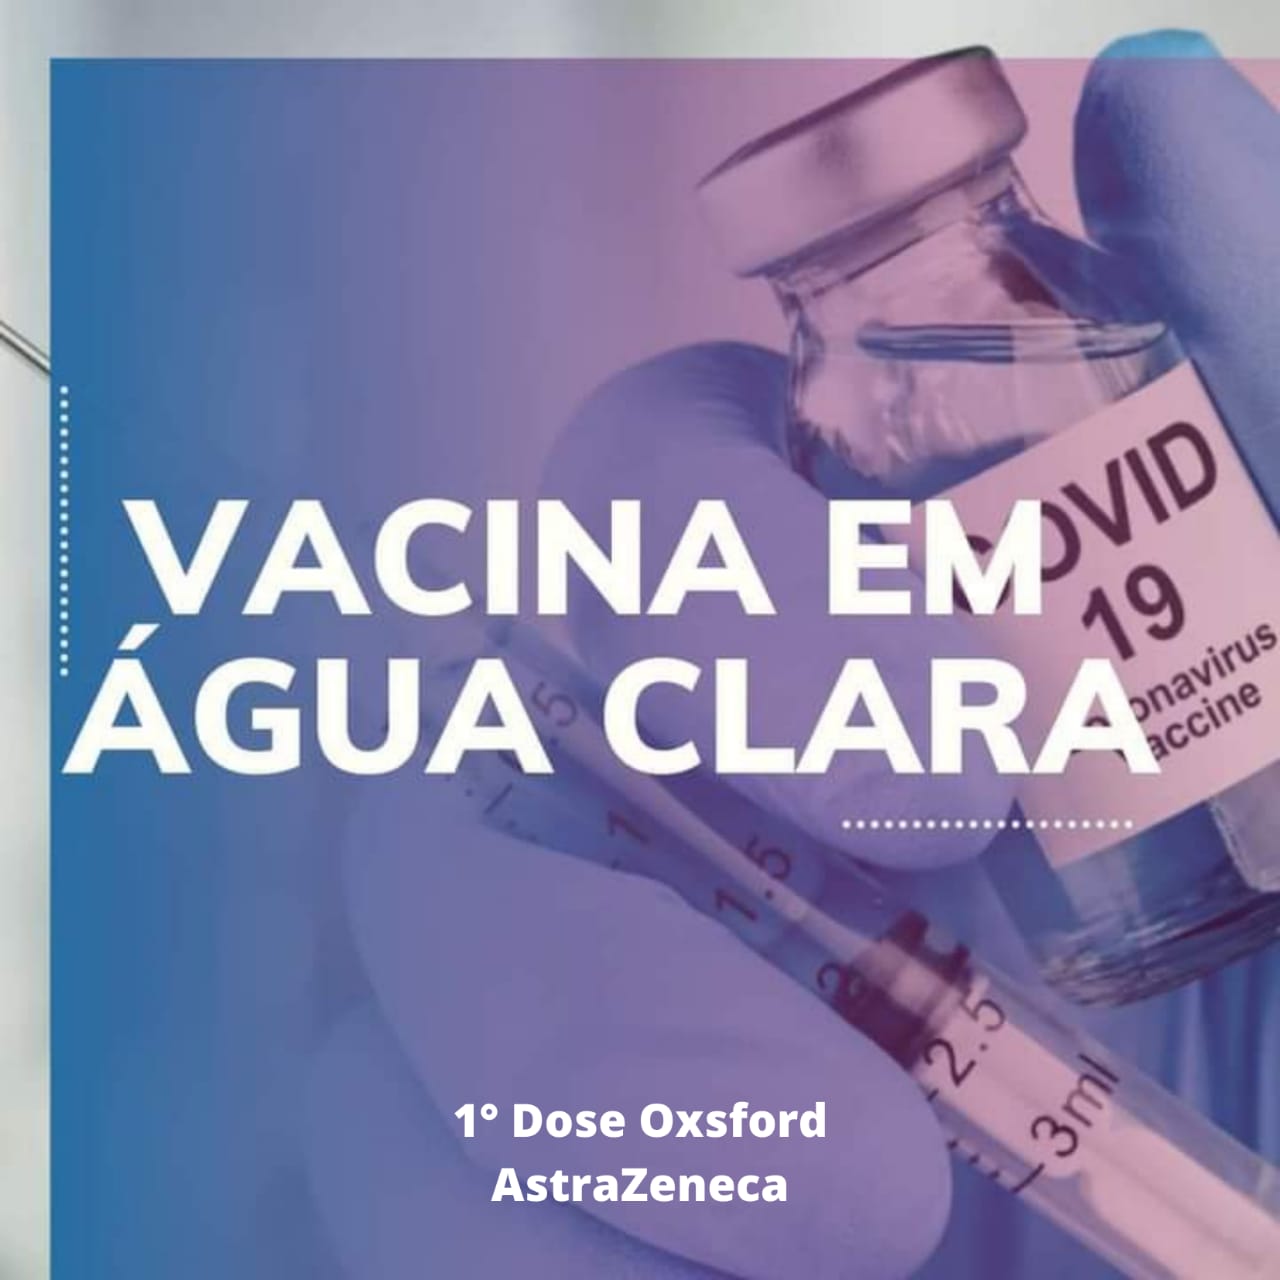 No momento você está vendo Administração Municipal de Água Clara avança na imunização contra COVID-19